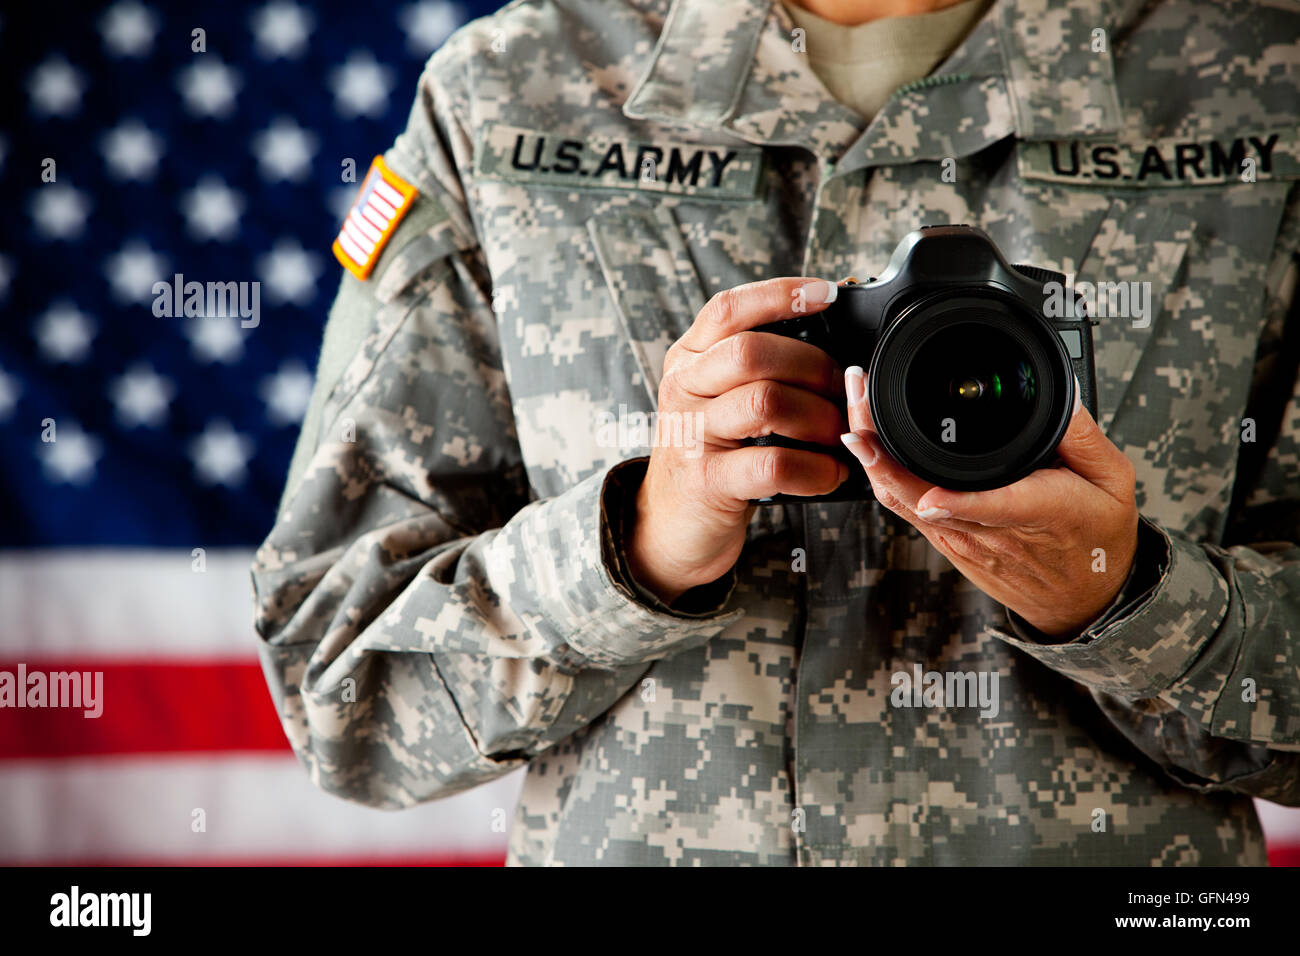 Serie mit einer Frau als eine solidier in United States Army Uniform.  Zahlreiche Requisiten vermitteln eine Vielzahl von Konzepten. Stockfoto